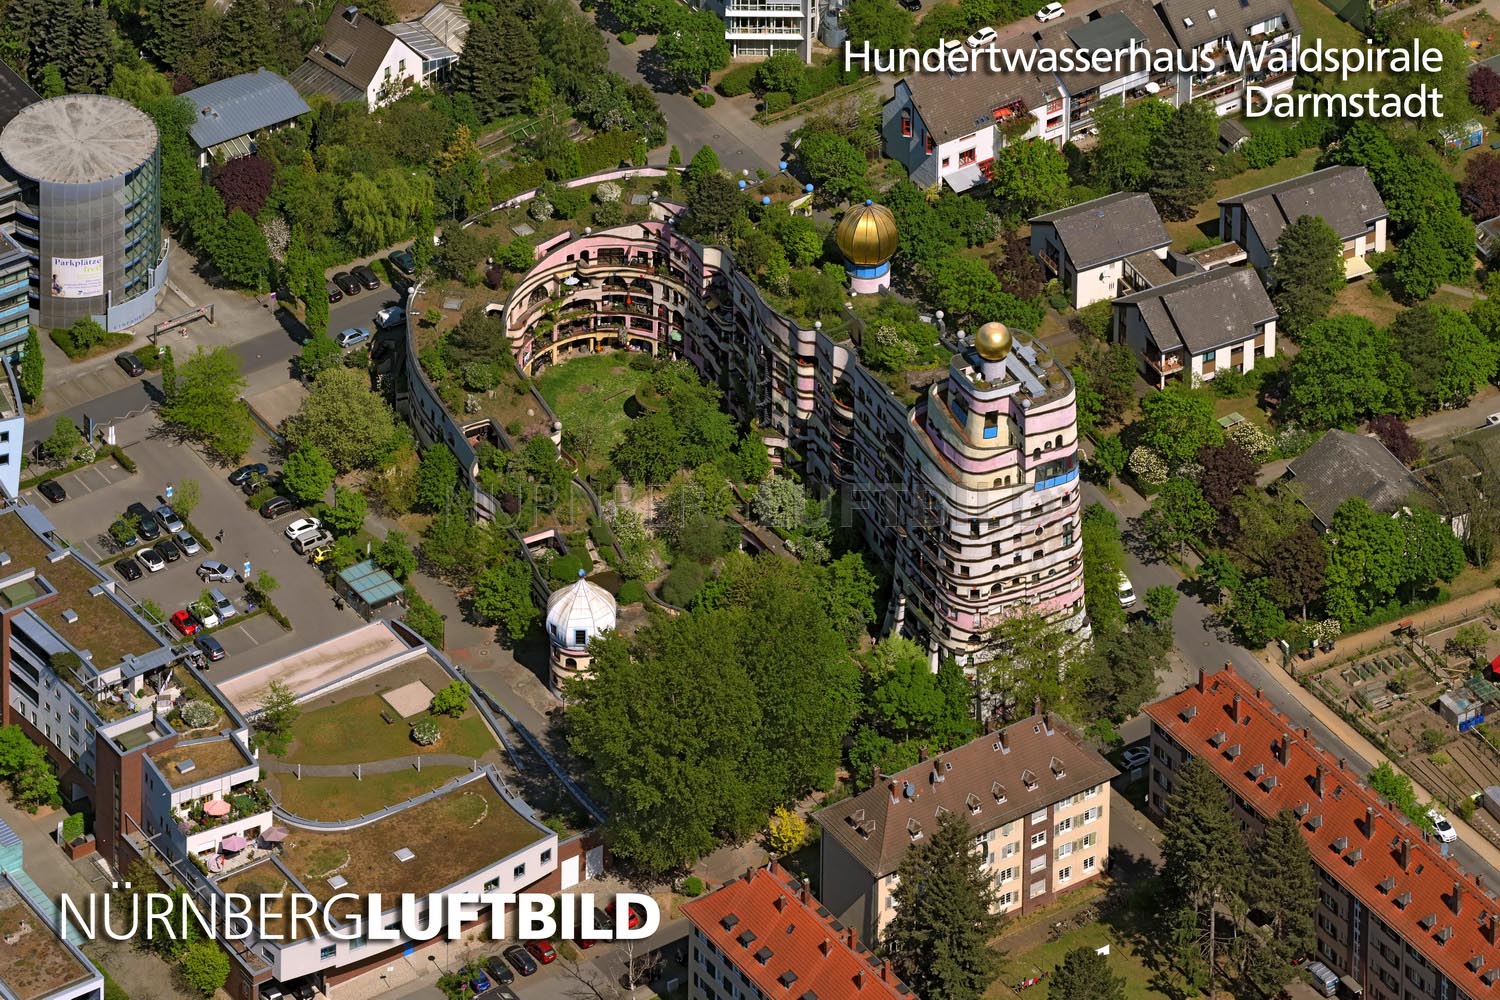 Hundertwasserhaus Waldspirale, Darmstadt